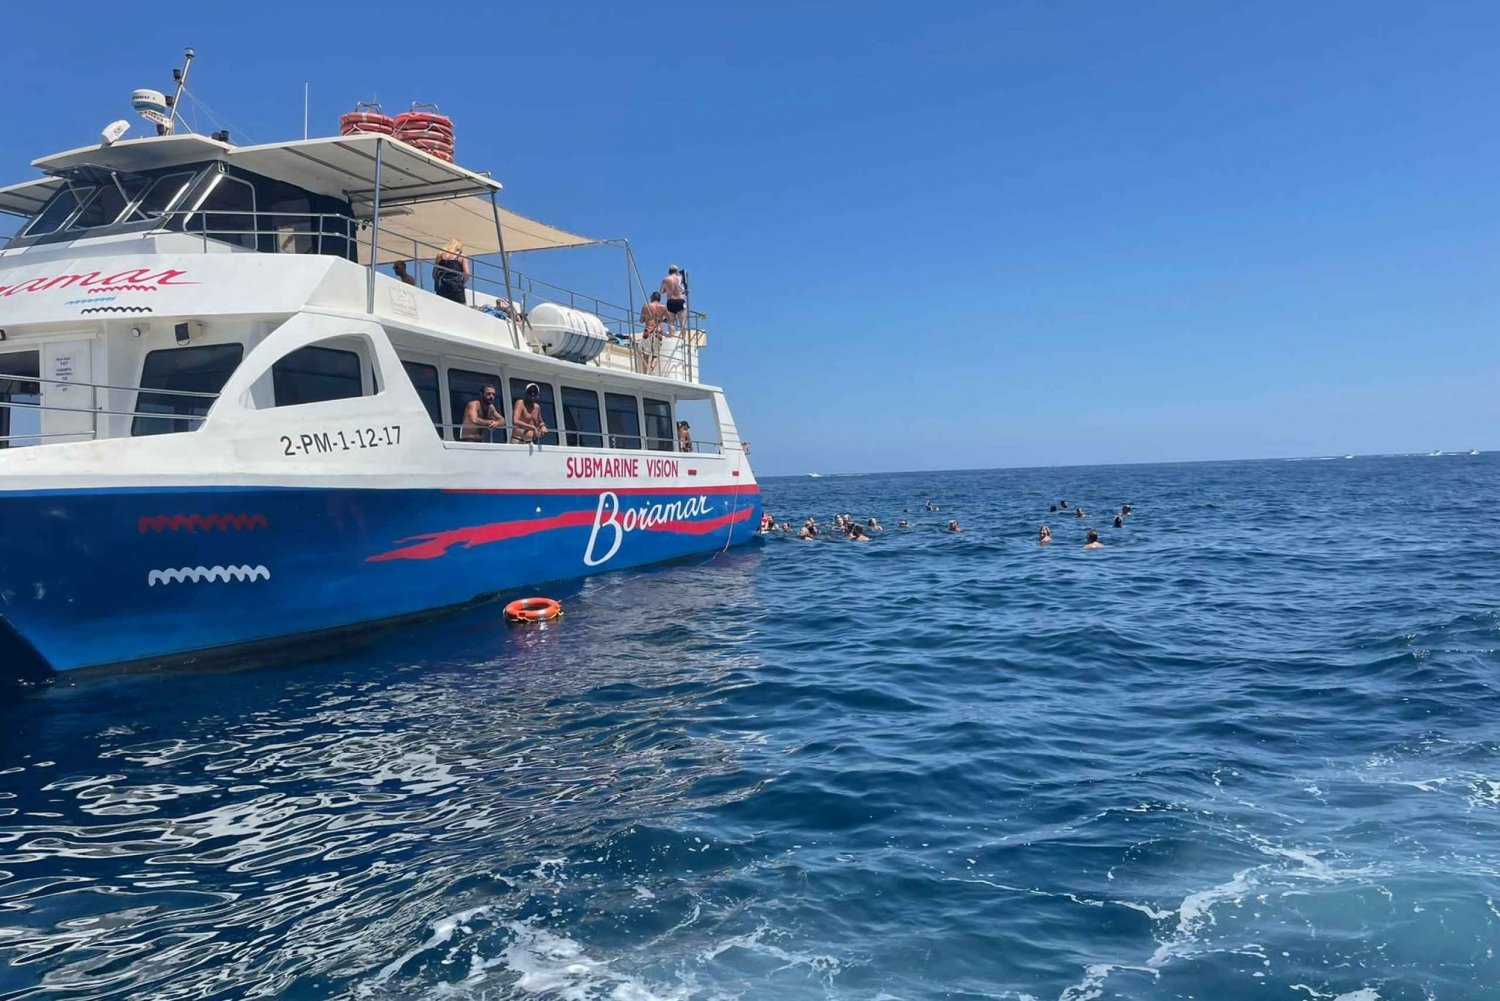 Javea: Excursión en Catamarán a Motor por la Isla del Portitxol con Paella